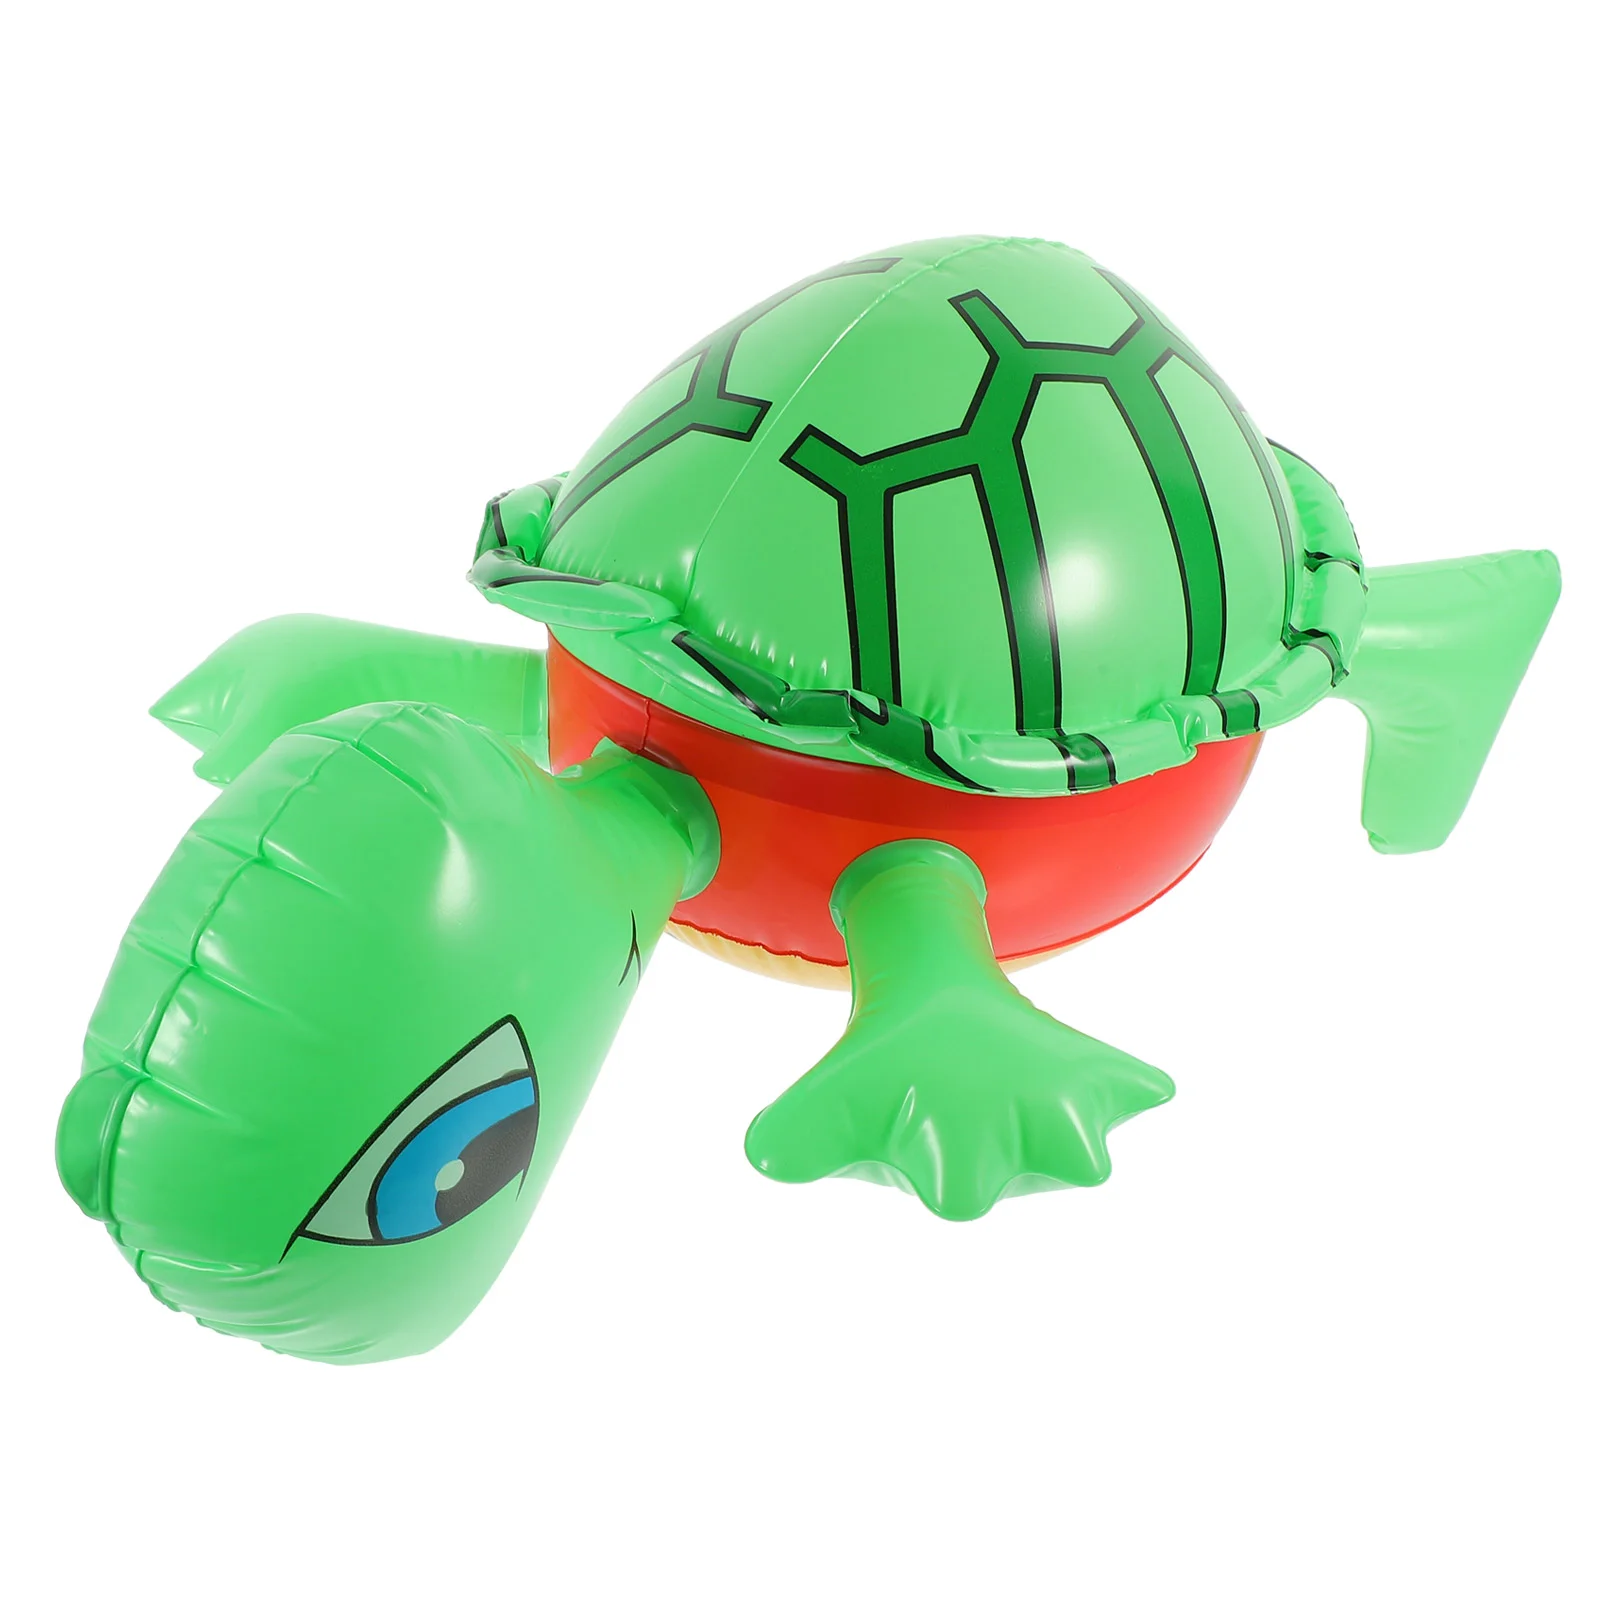 

Надувная черепаха, надувная игрушка, черепаха, воздушный шар, животное, тема, фотография